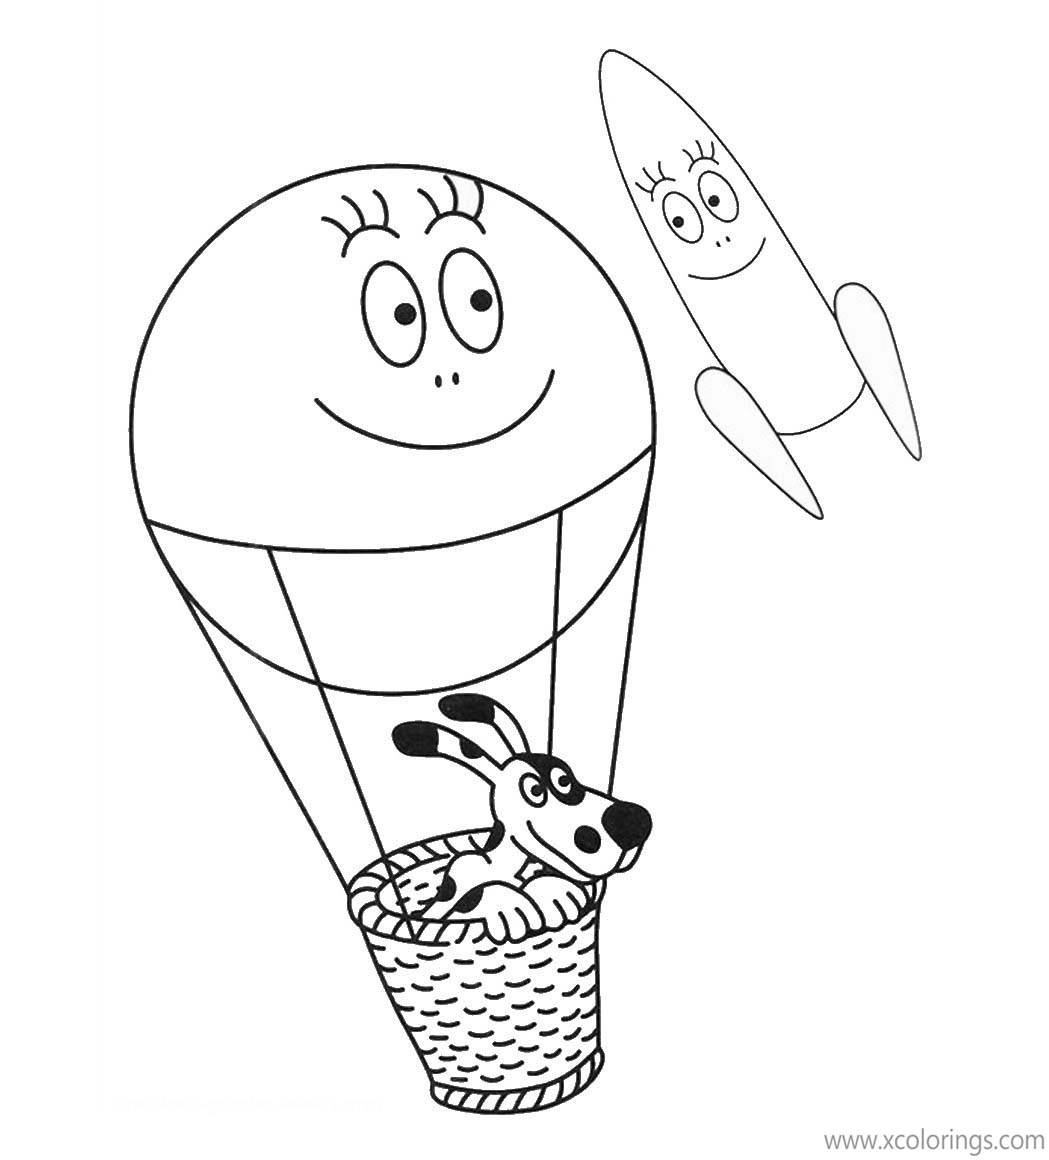 Free Barbapapa Coloring Pages Hot Air Balloon and Rocket printable